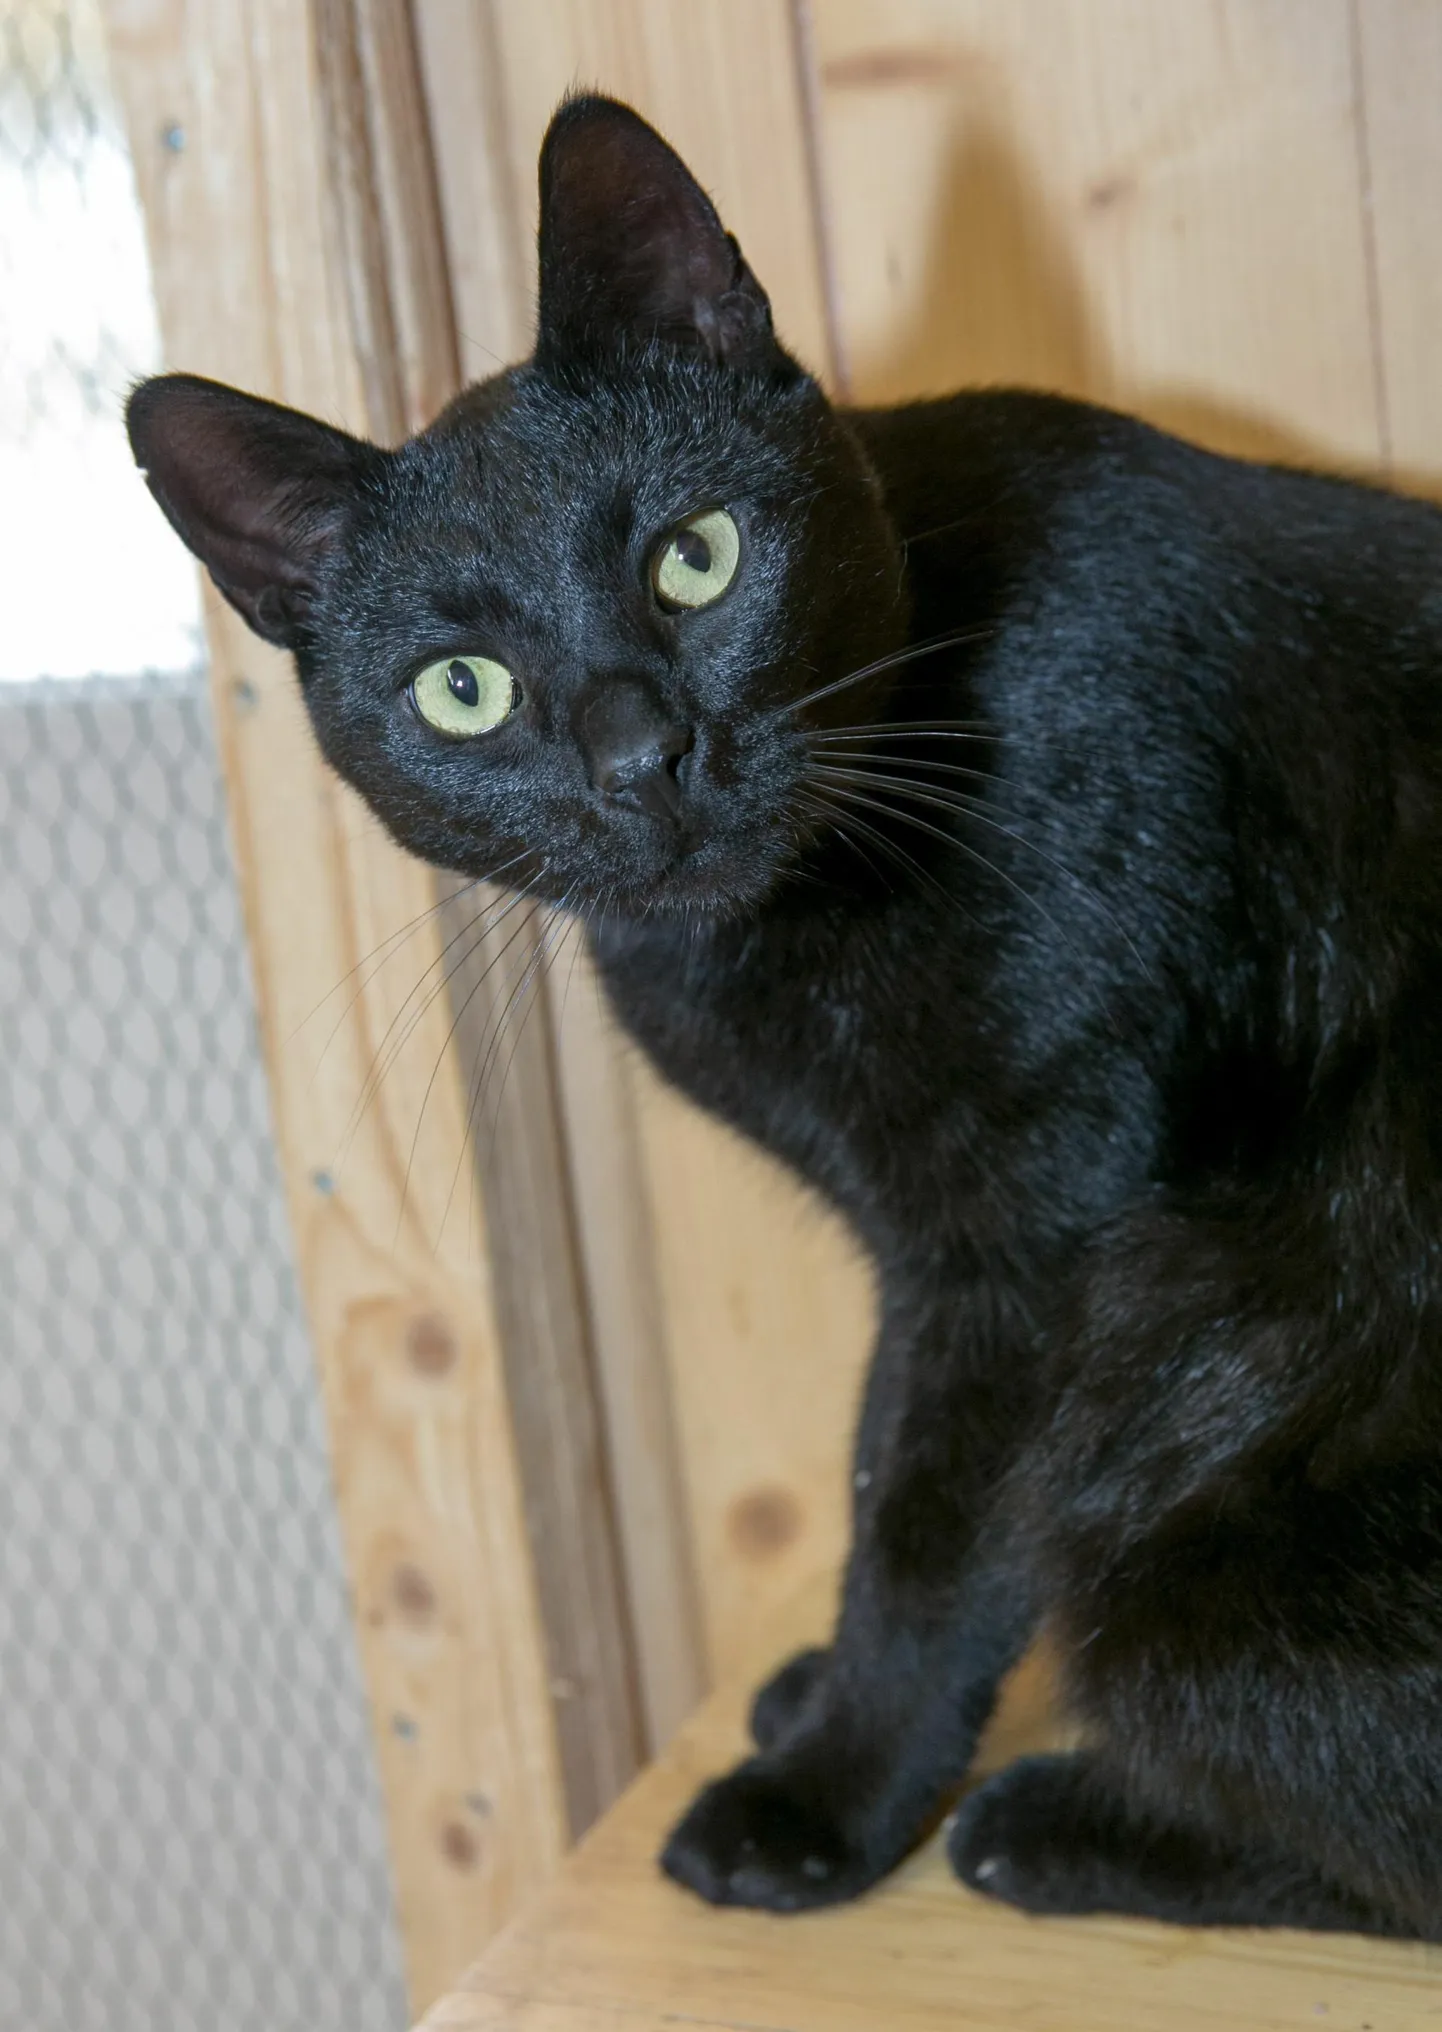 Varjupaikade mittetulundusühingus peetakse musta kassi kuud juba kümnendat aastat. Sel ajal saab tavapärase loovutustasu asemel musta või mustvalge kassi koju tuua euro eest.